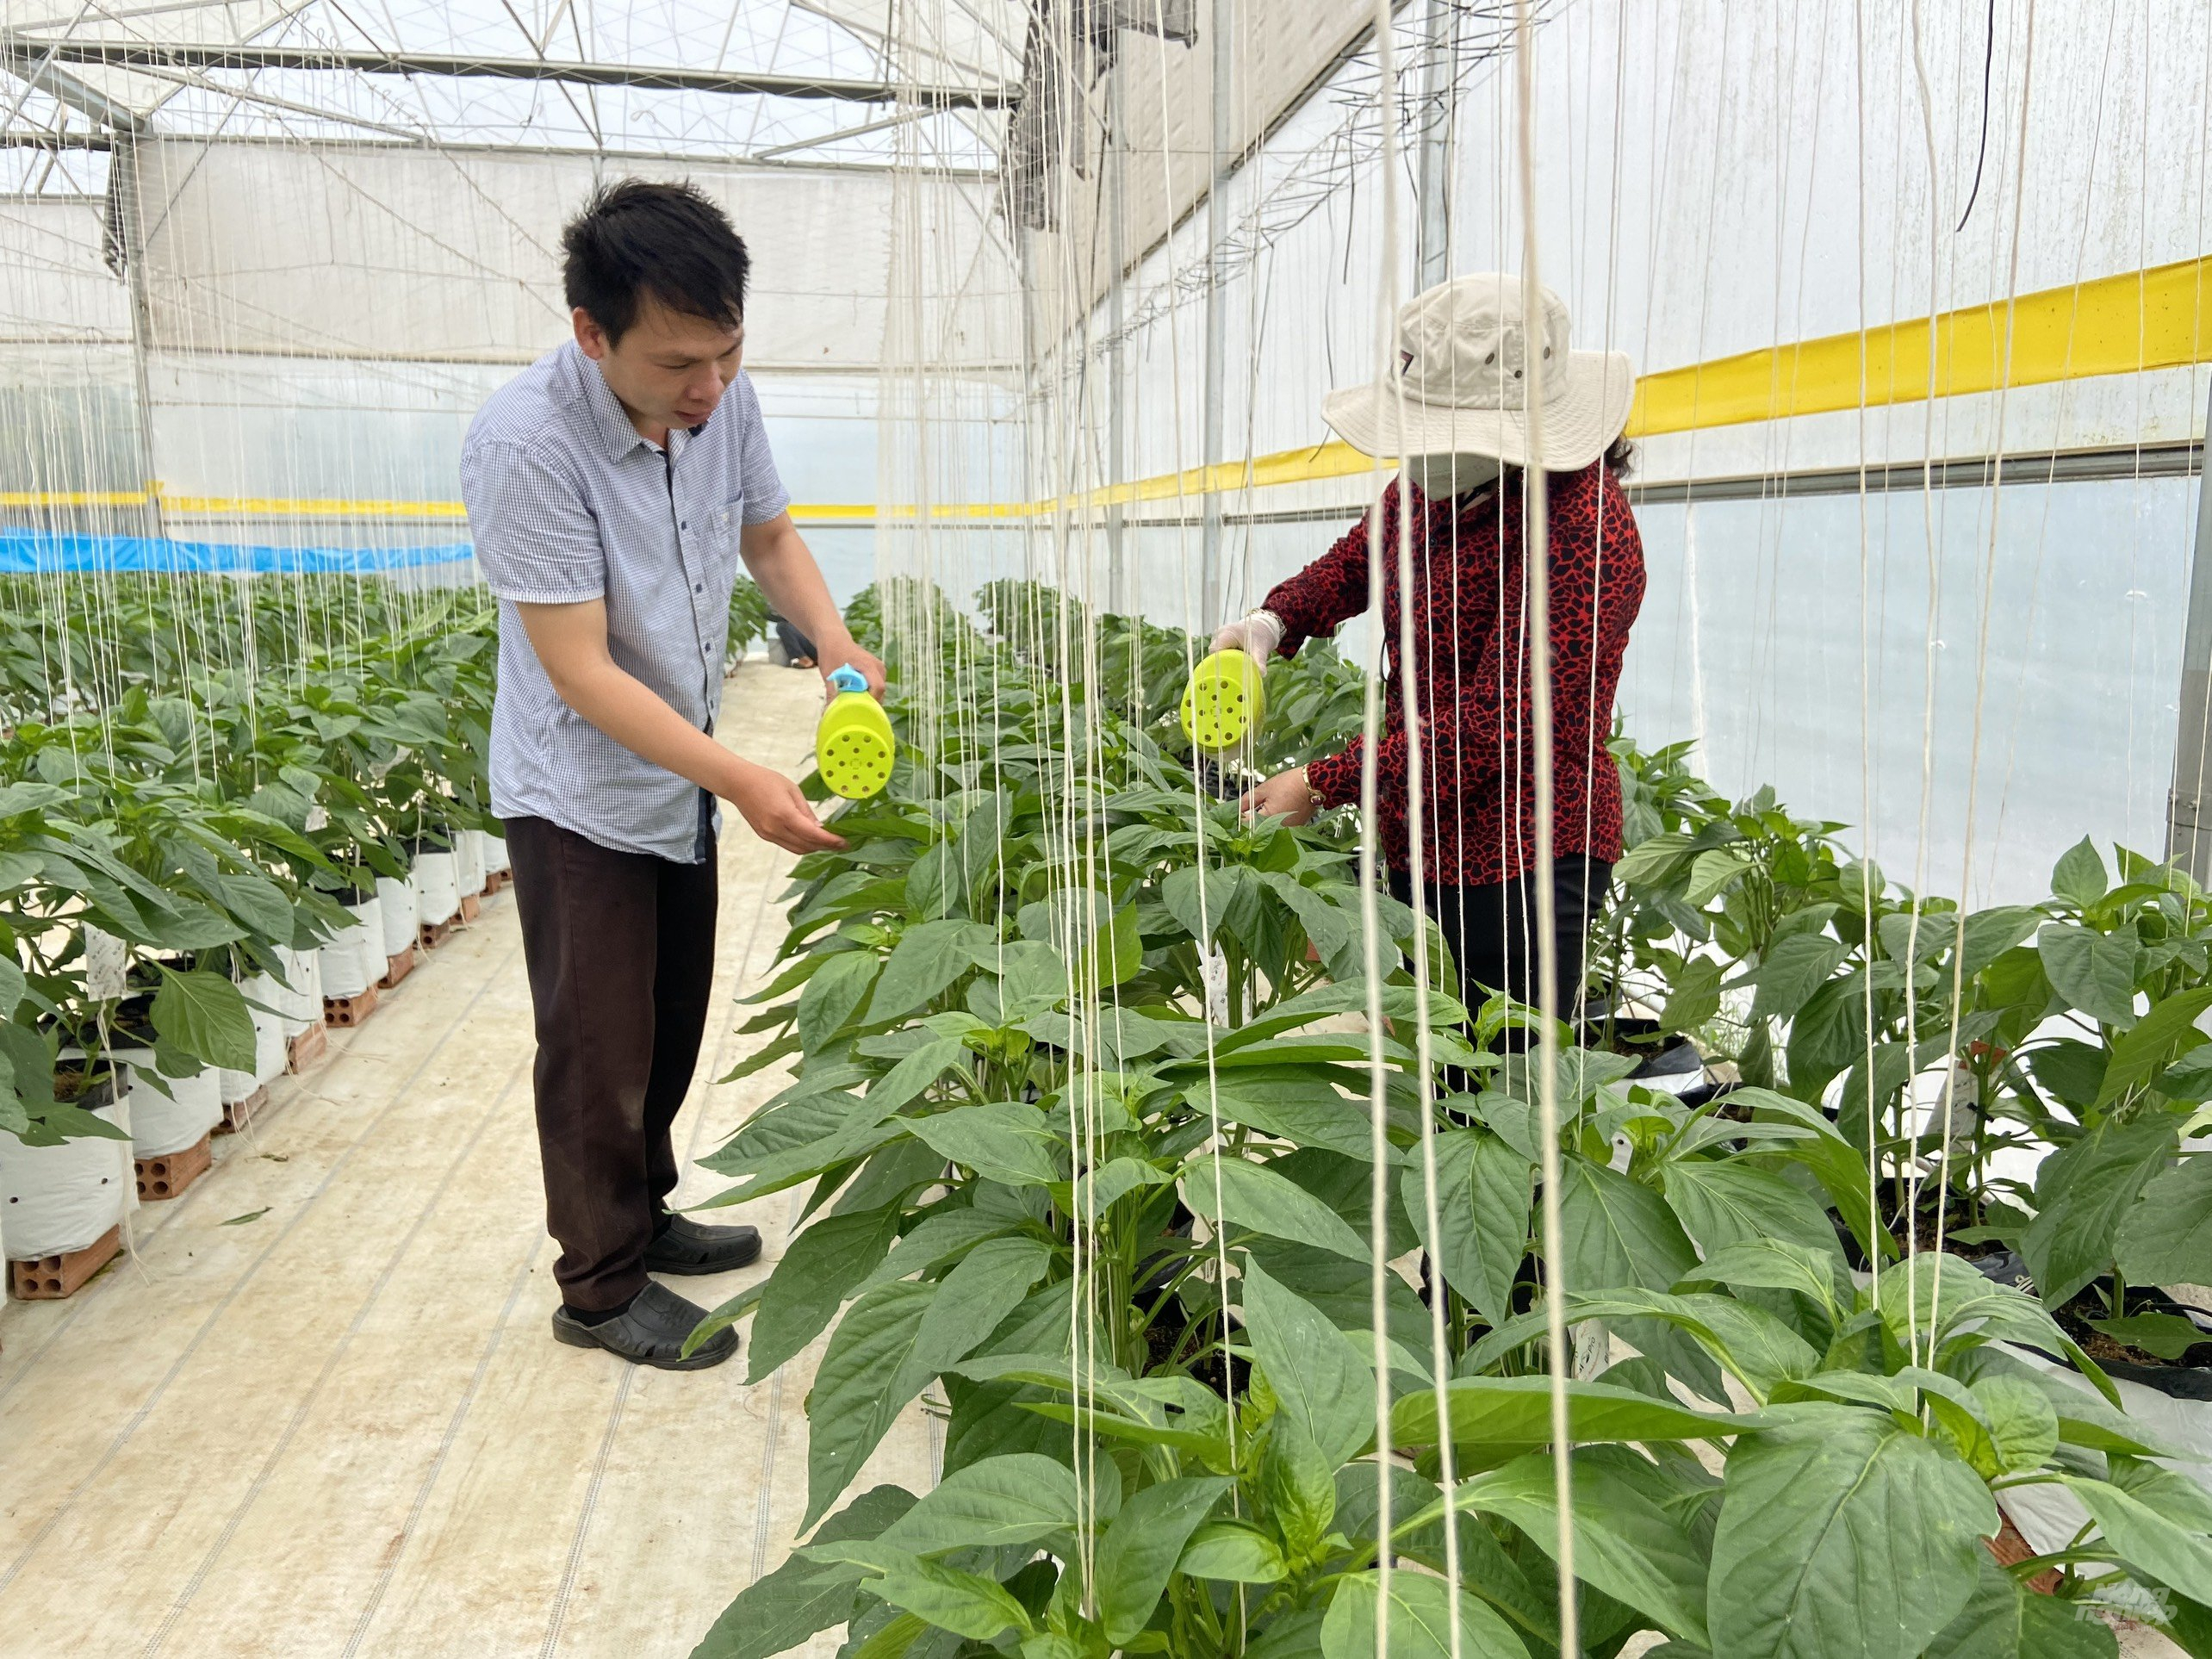 Rijk Zwaan Việt Nam và Bio pro - Đà Lạt Hasfarm cùng nghiên cứu đưa ra quy trình kỹ thuật chung đối với canh tác các giống ớt chuông và các cây trồng khác trong nhà màng, giúp mang lại hiệu quả cao cho nông dân. Ảnh: PV.